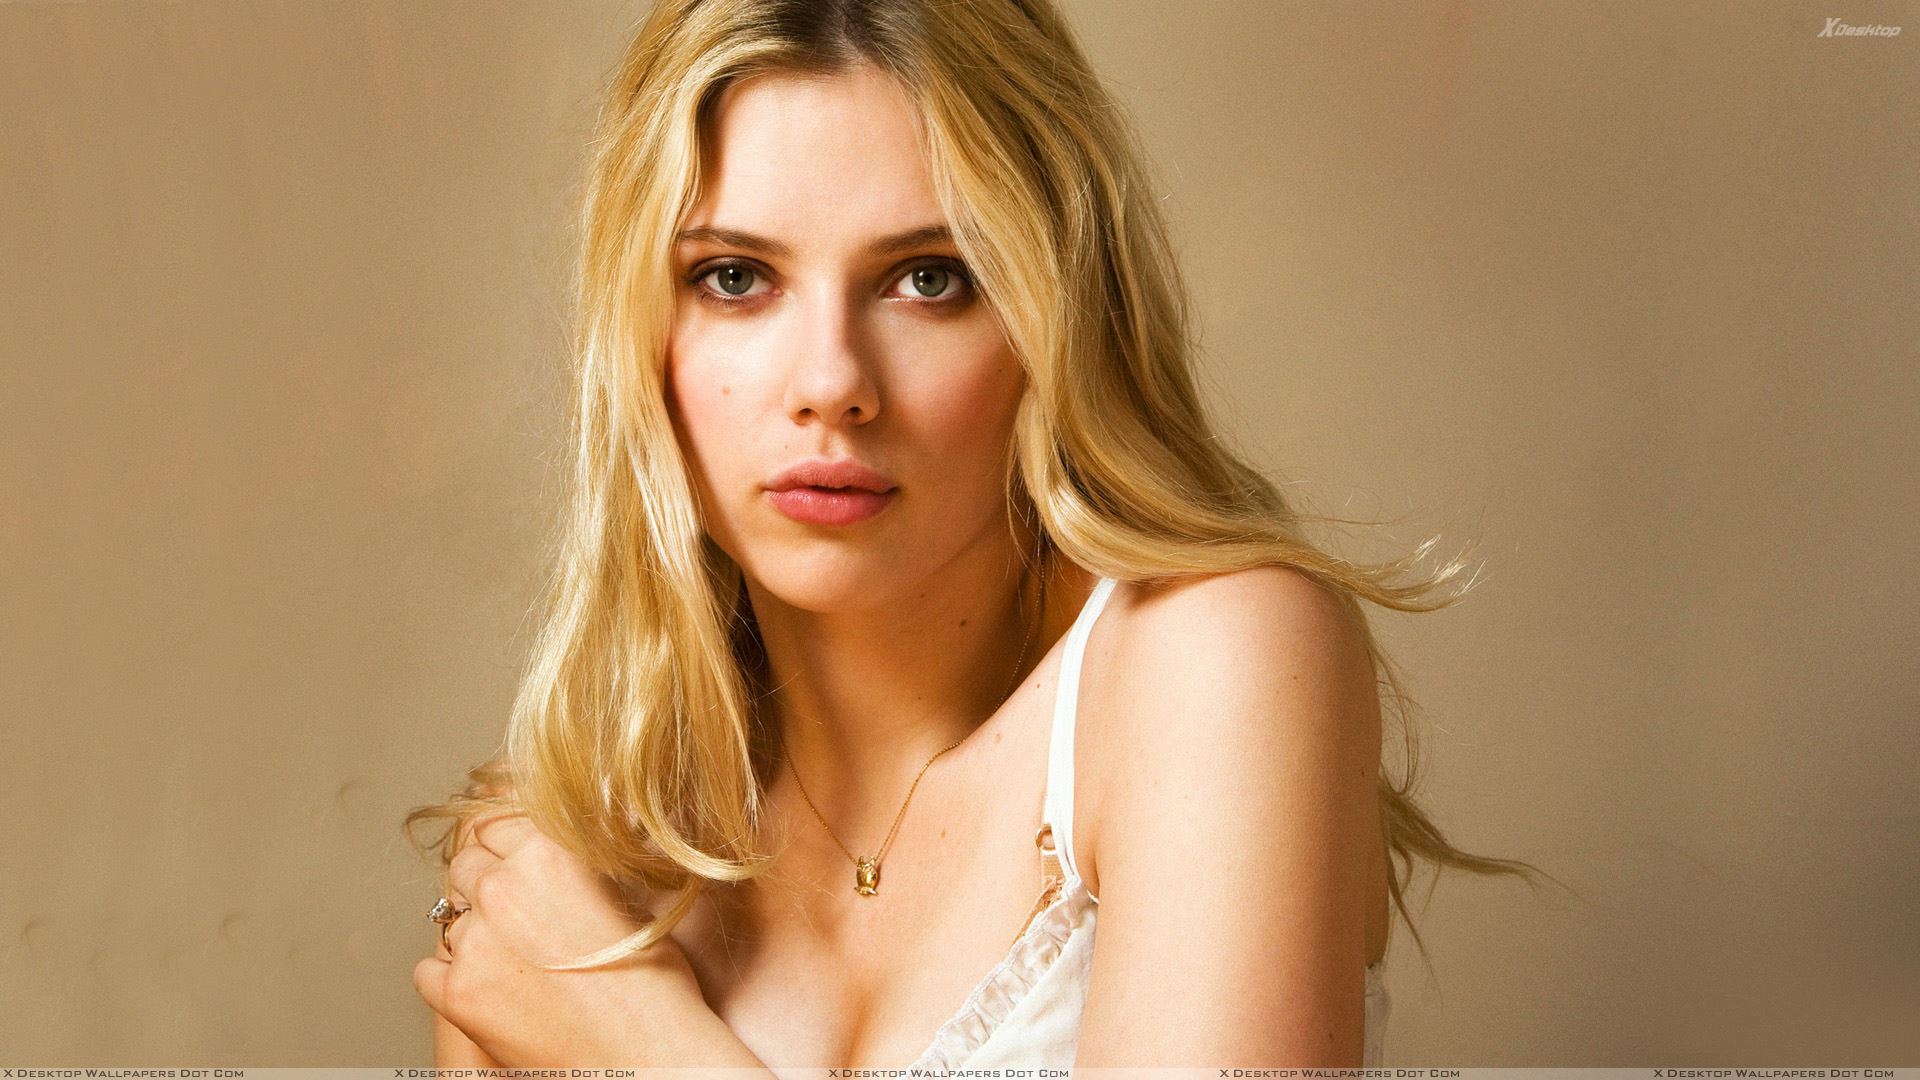 Scarlett Johansson Looking At Camera Front Pose Wallpaper